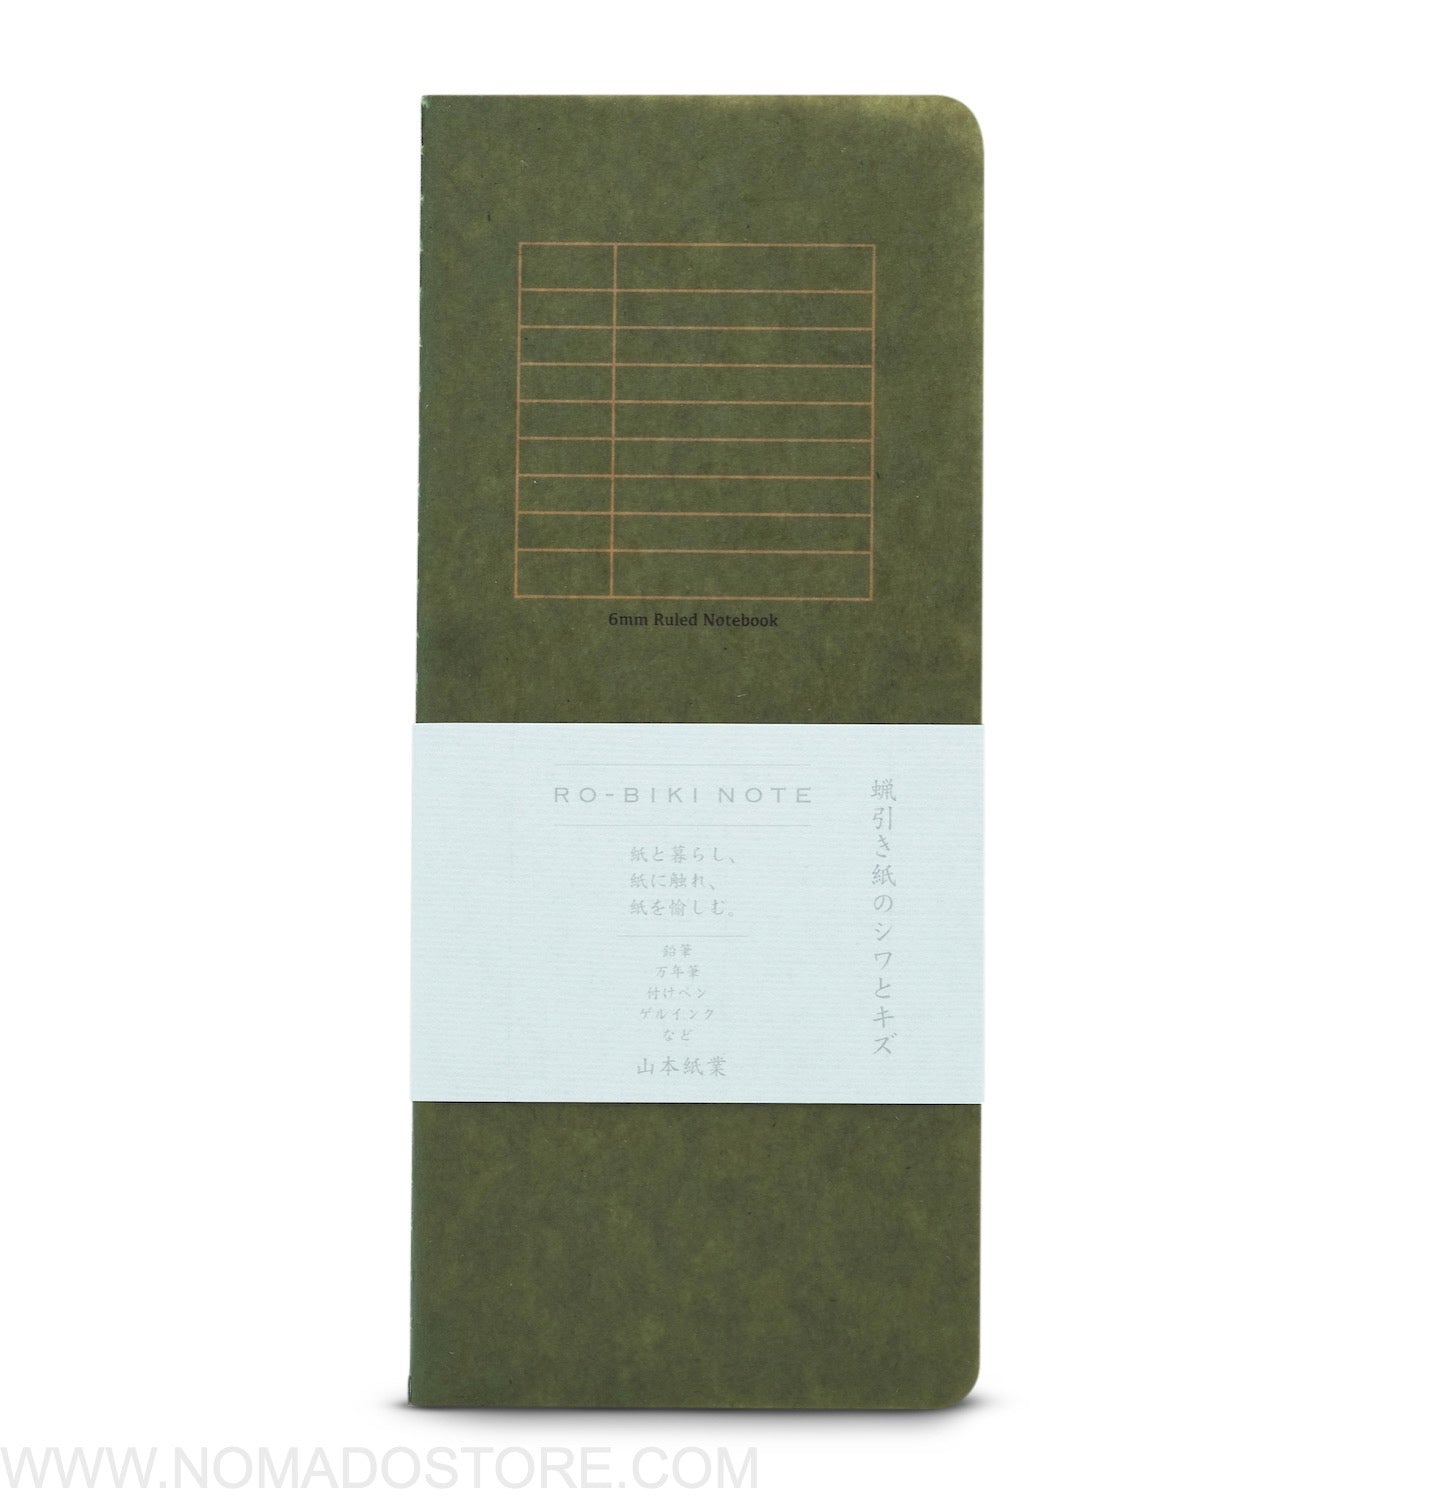 Yamamoto Paper "RO-BIKI NOTE" BASIC SERIES Ruled Notebook